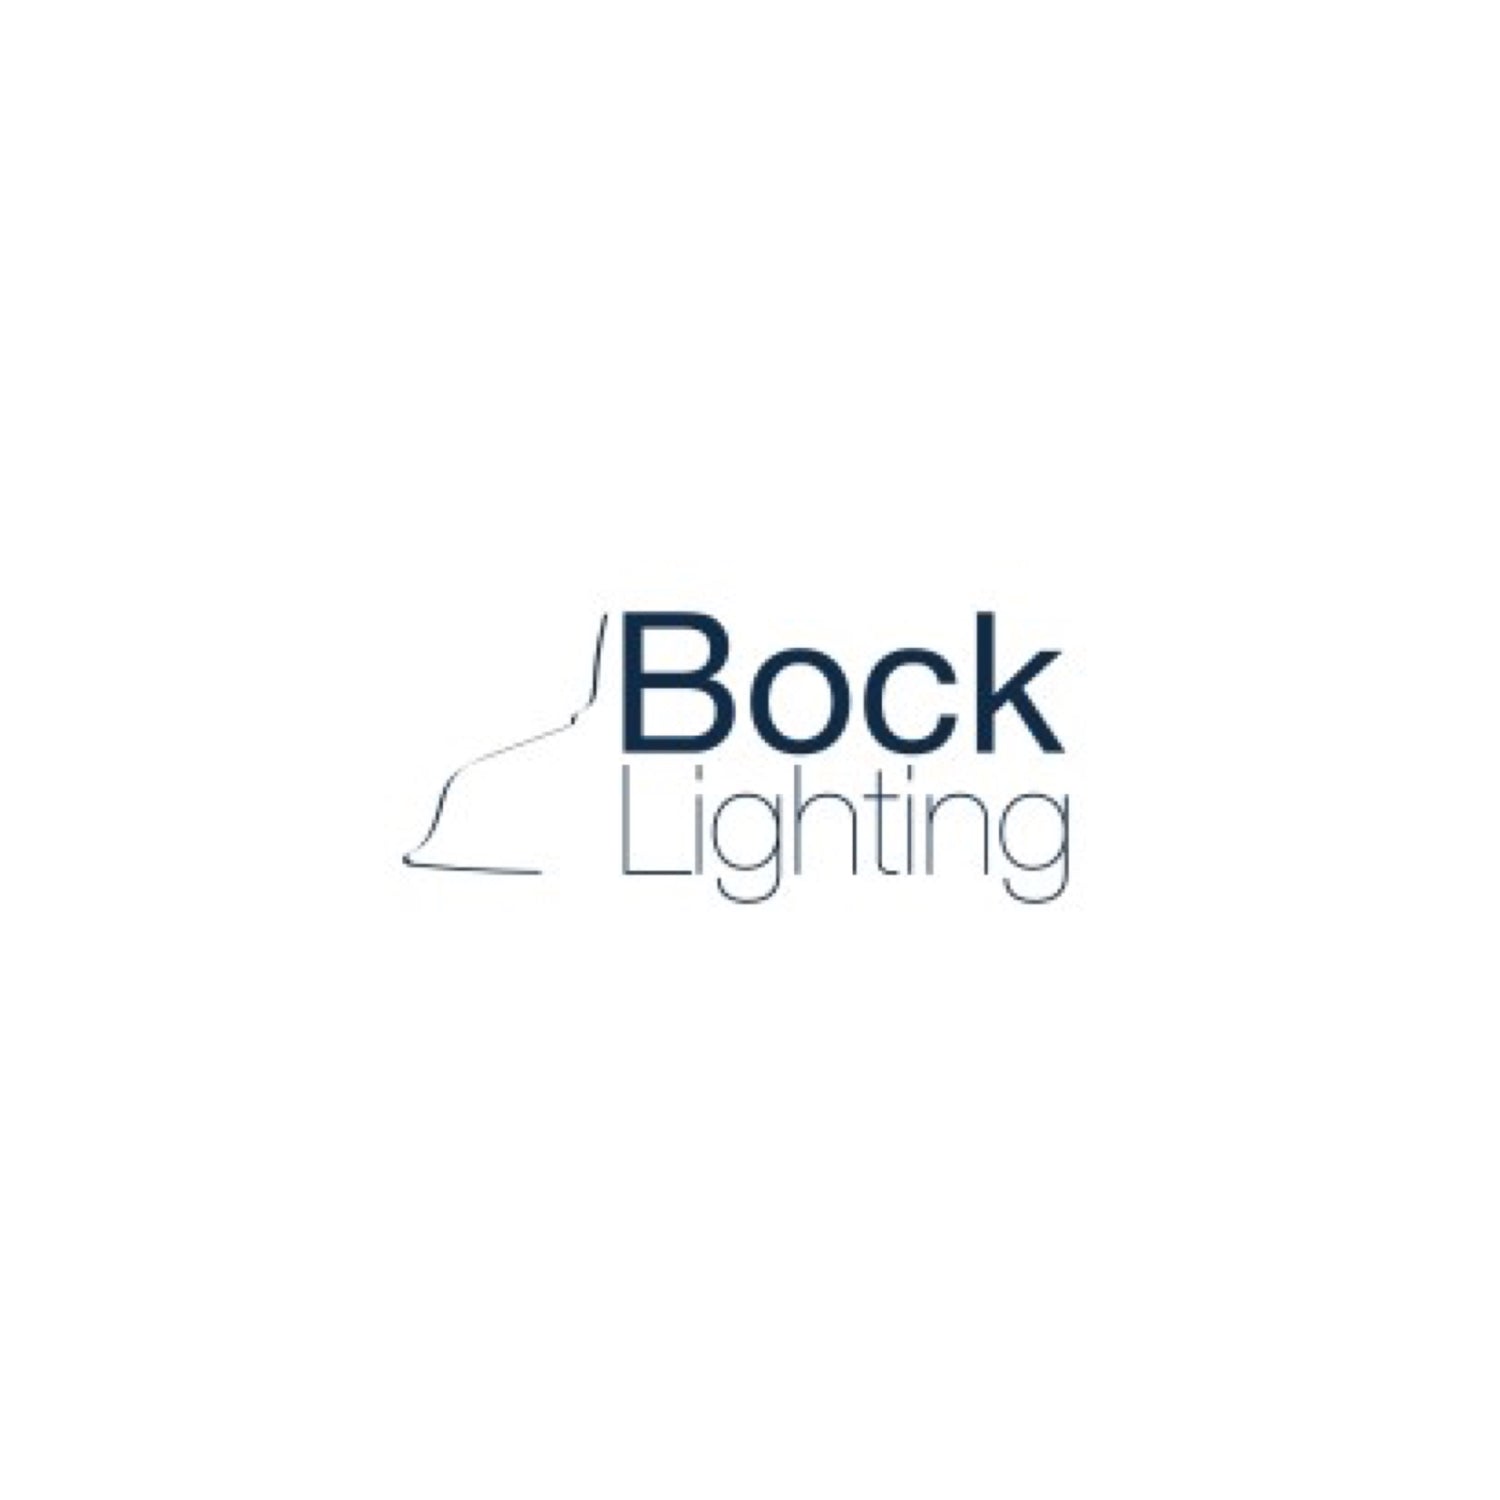 BOCK LIGHTING LLC